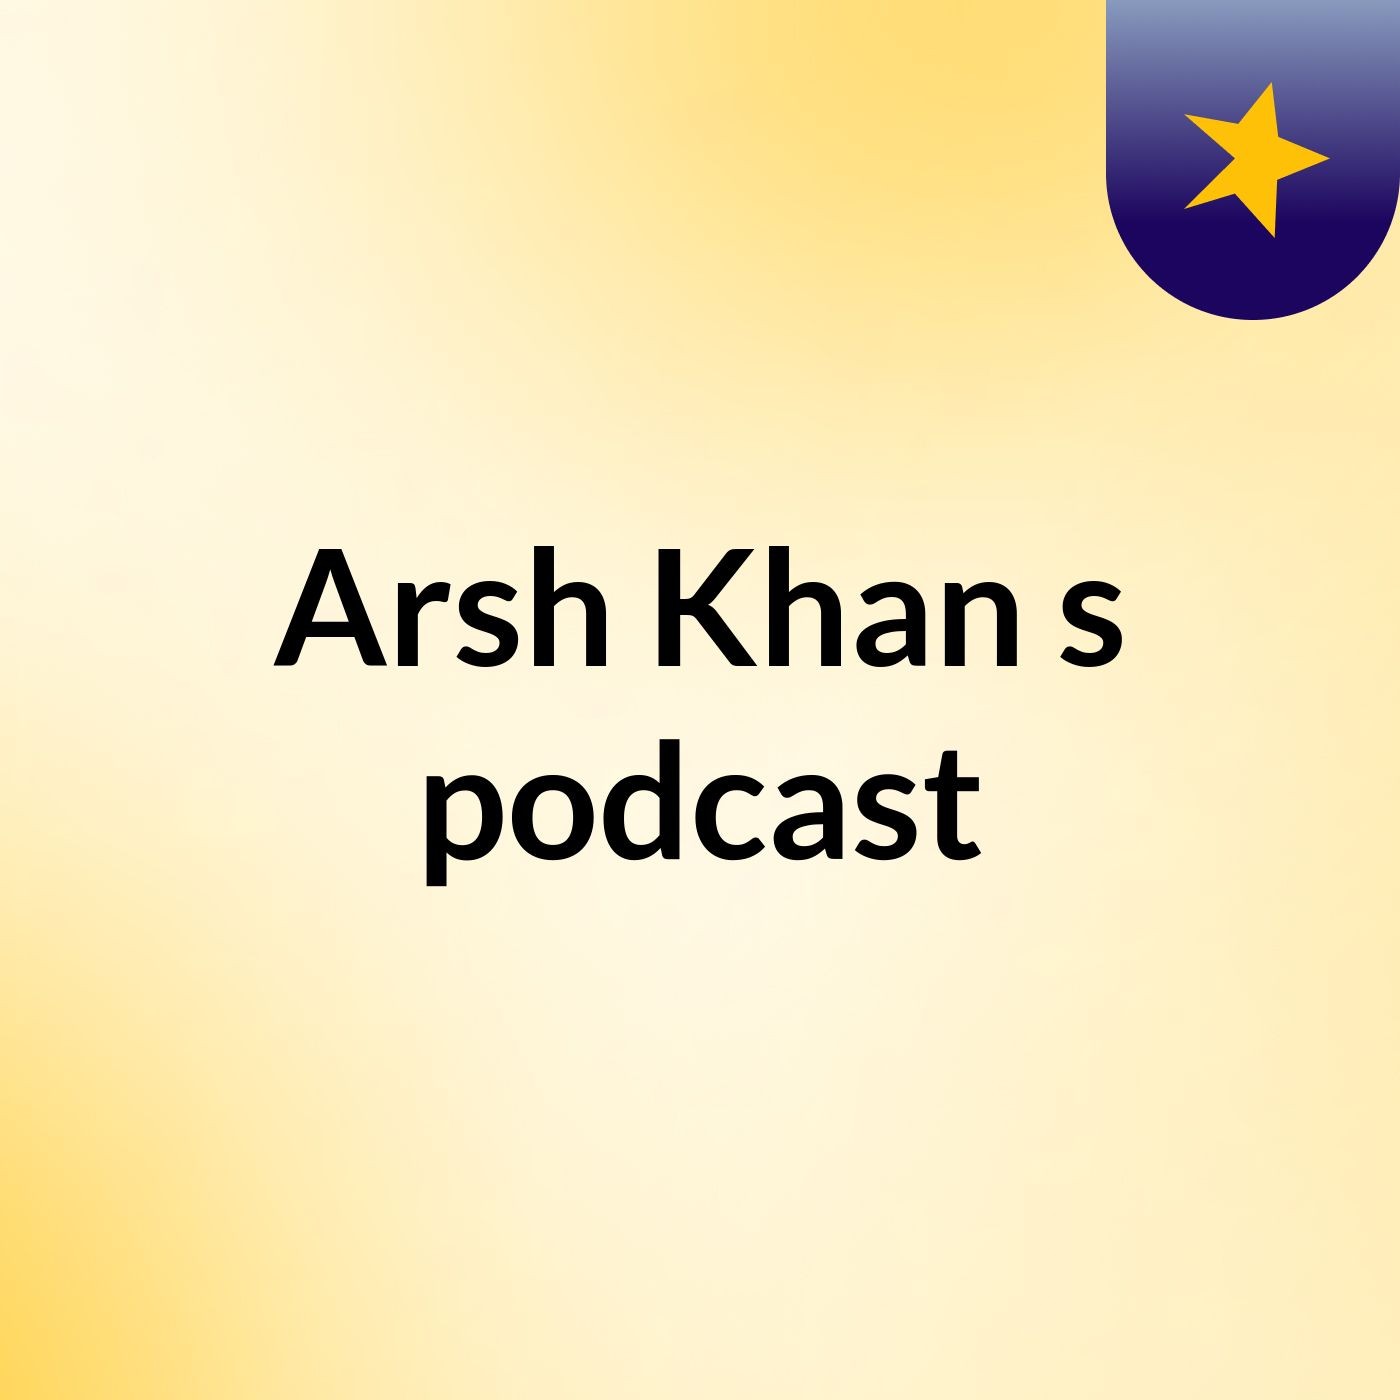 Episode 10 - Arsh Khan's podcast